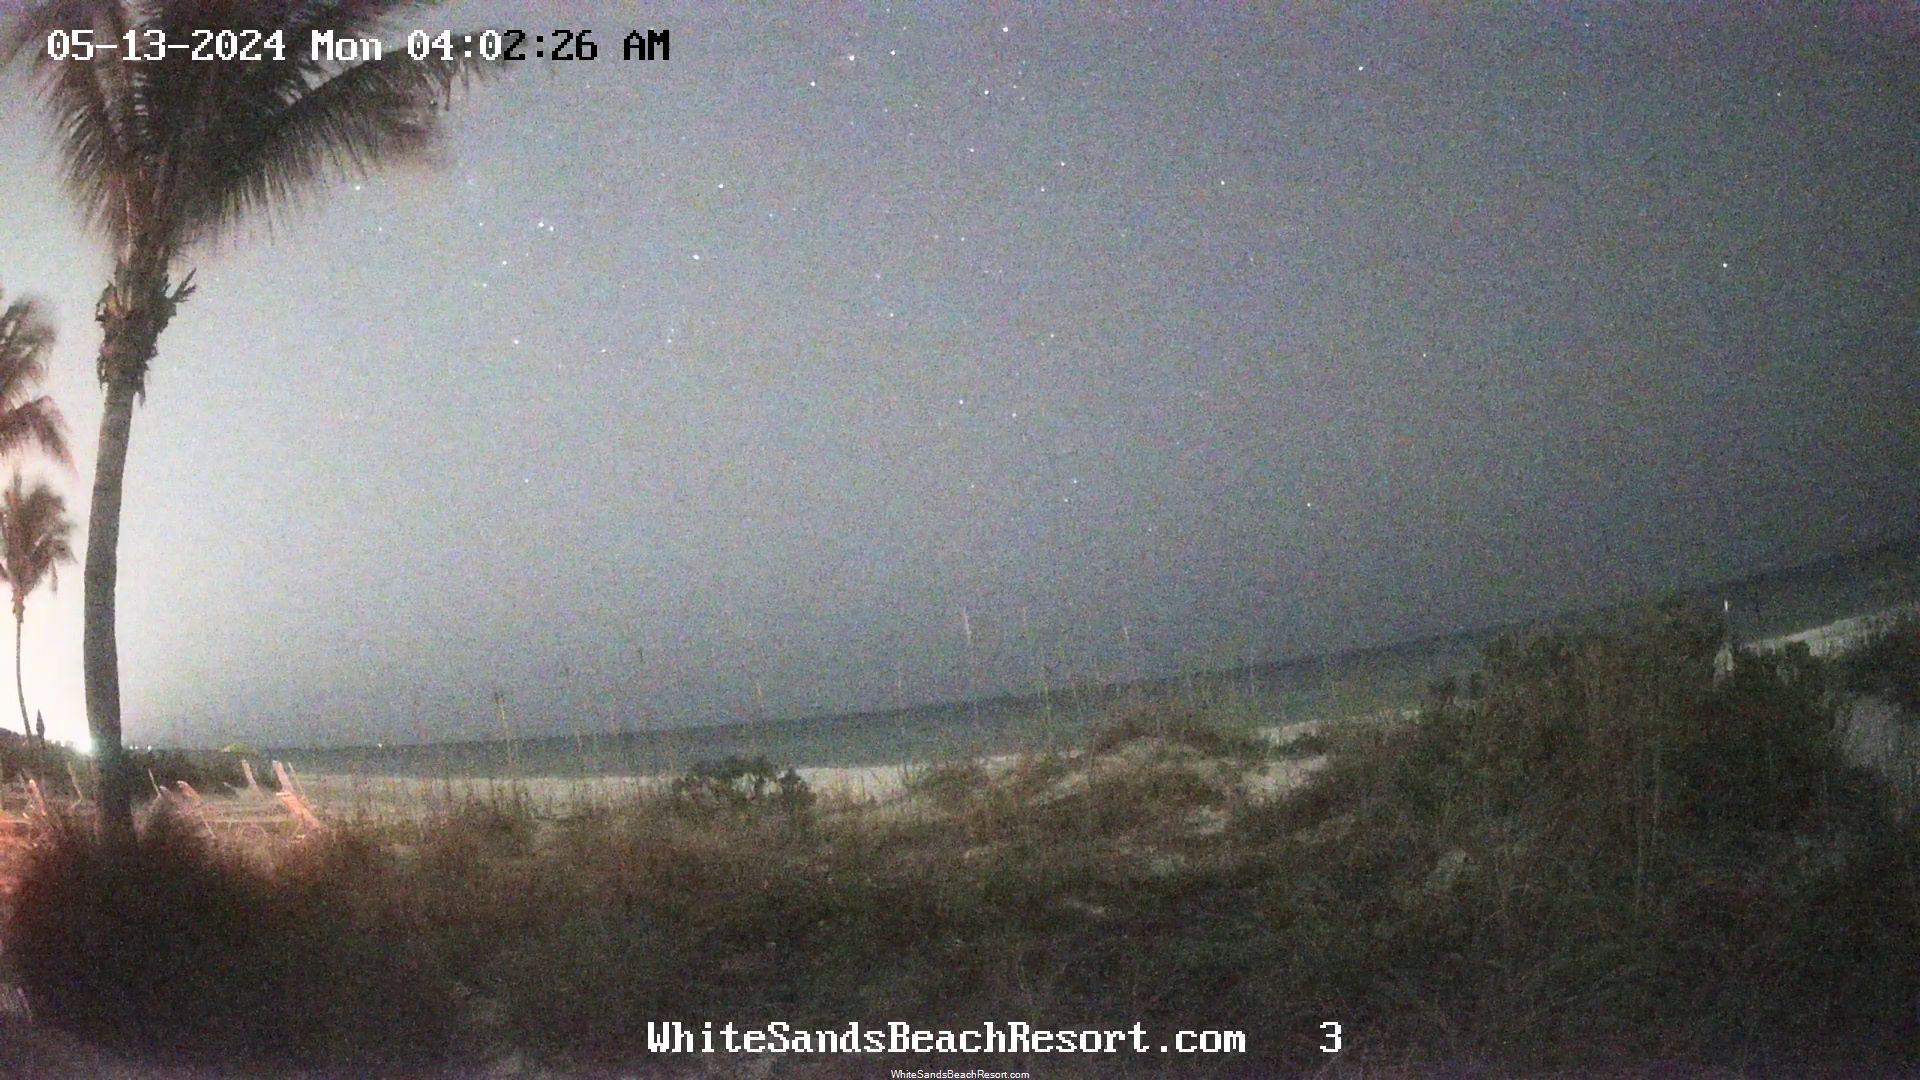 Holmes Beach, Florida Vie. 03:56